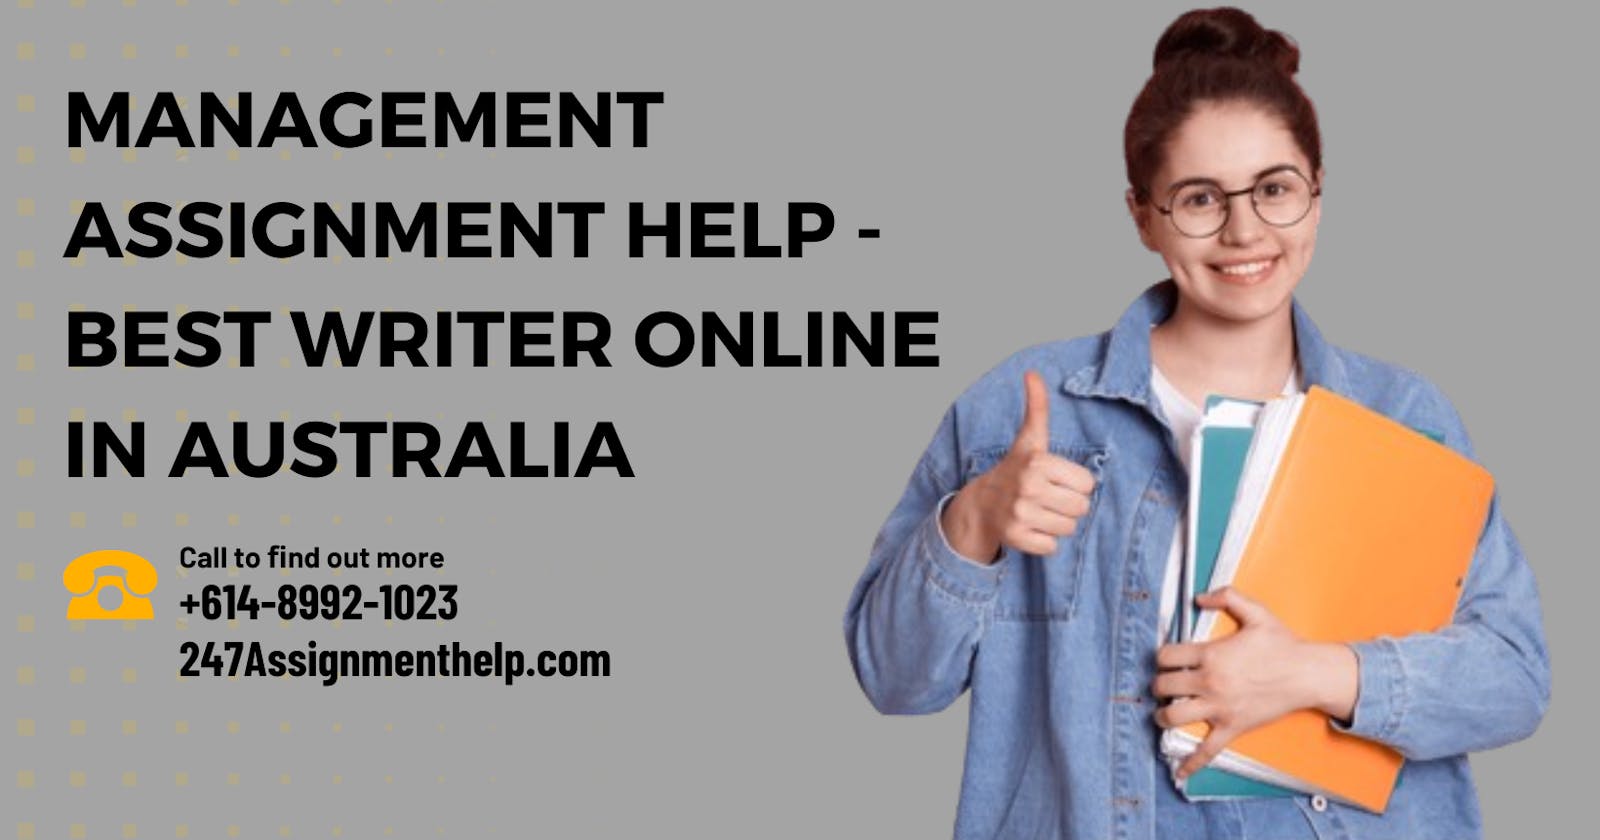 Management Assignment Help - Best Writer Online in Australia